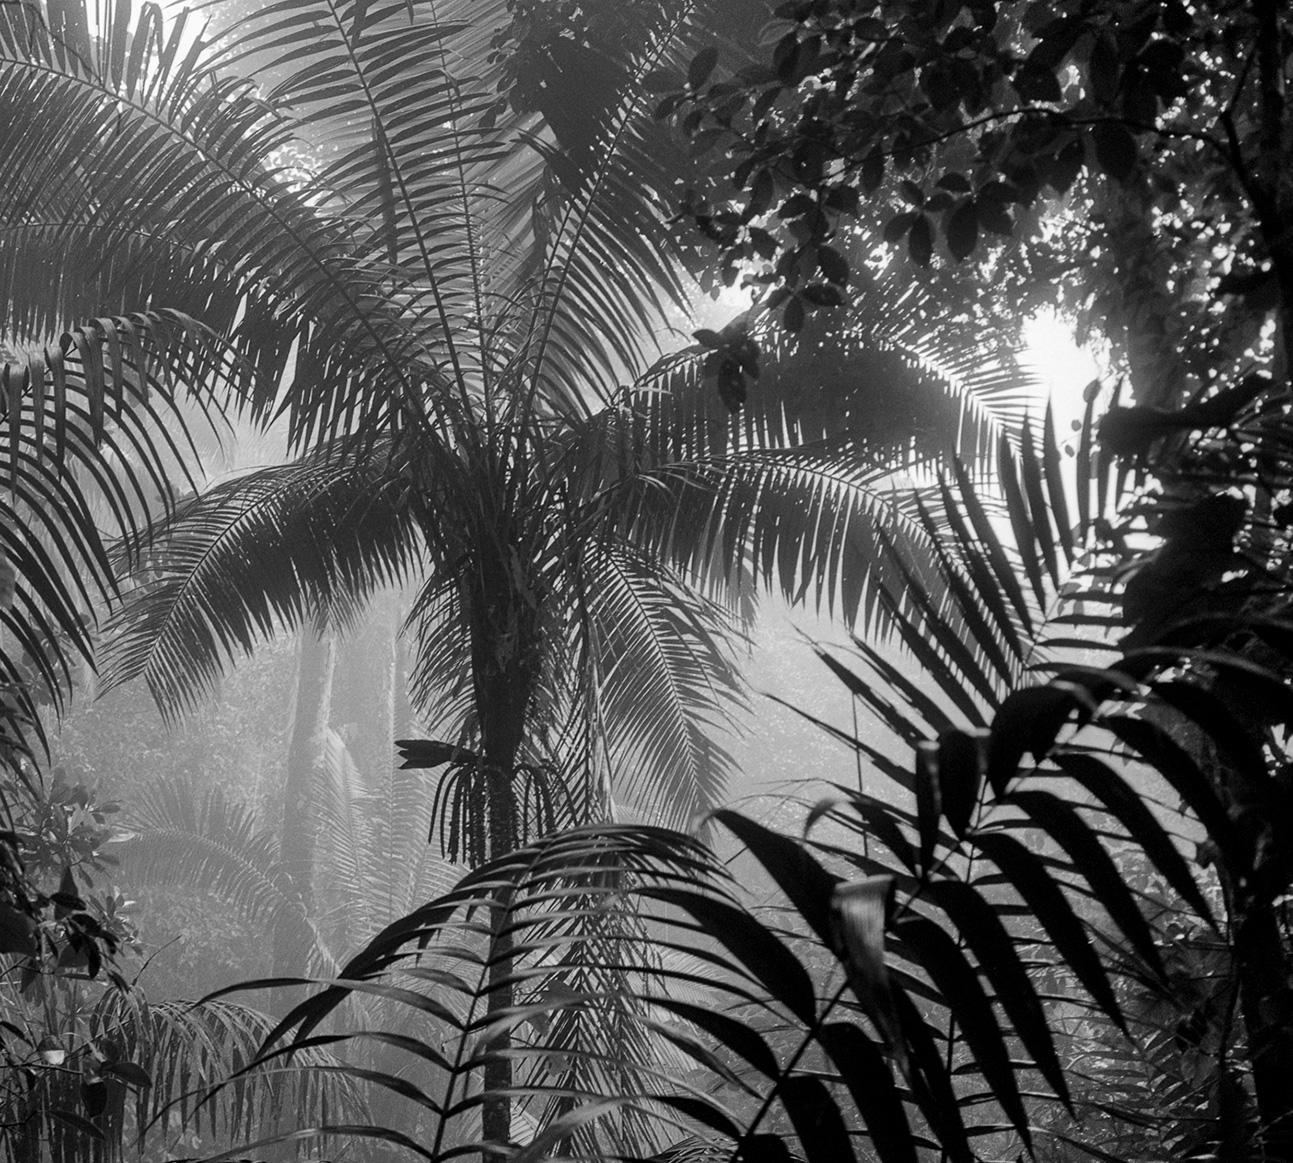 Bosque Húmedo Tropical II Nuquí, Silver Gelatin Print - Naturalistic Photograph by Miguel Winograd 